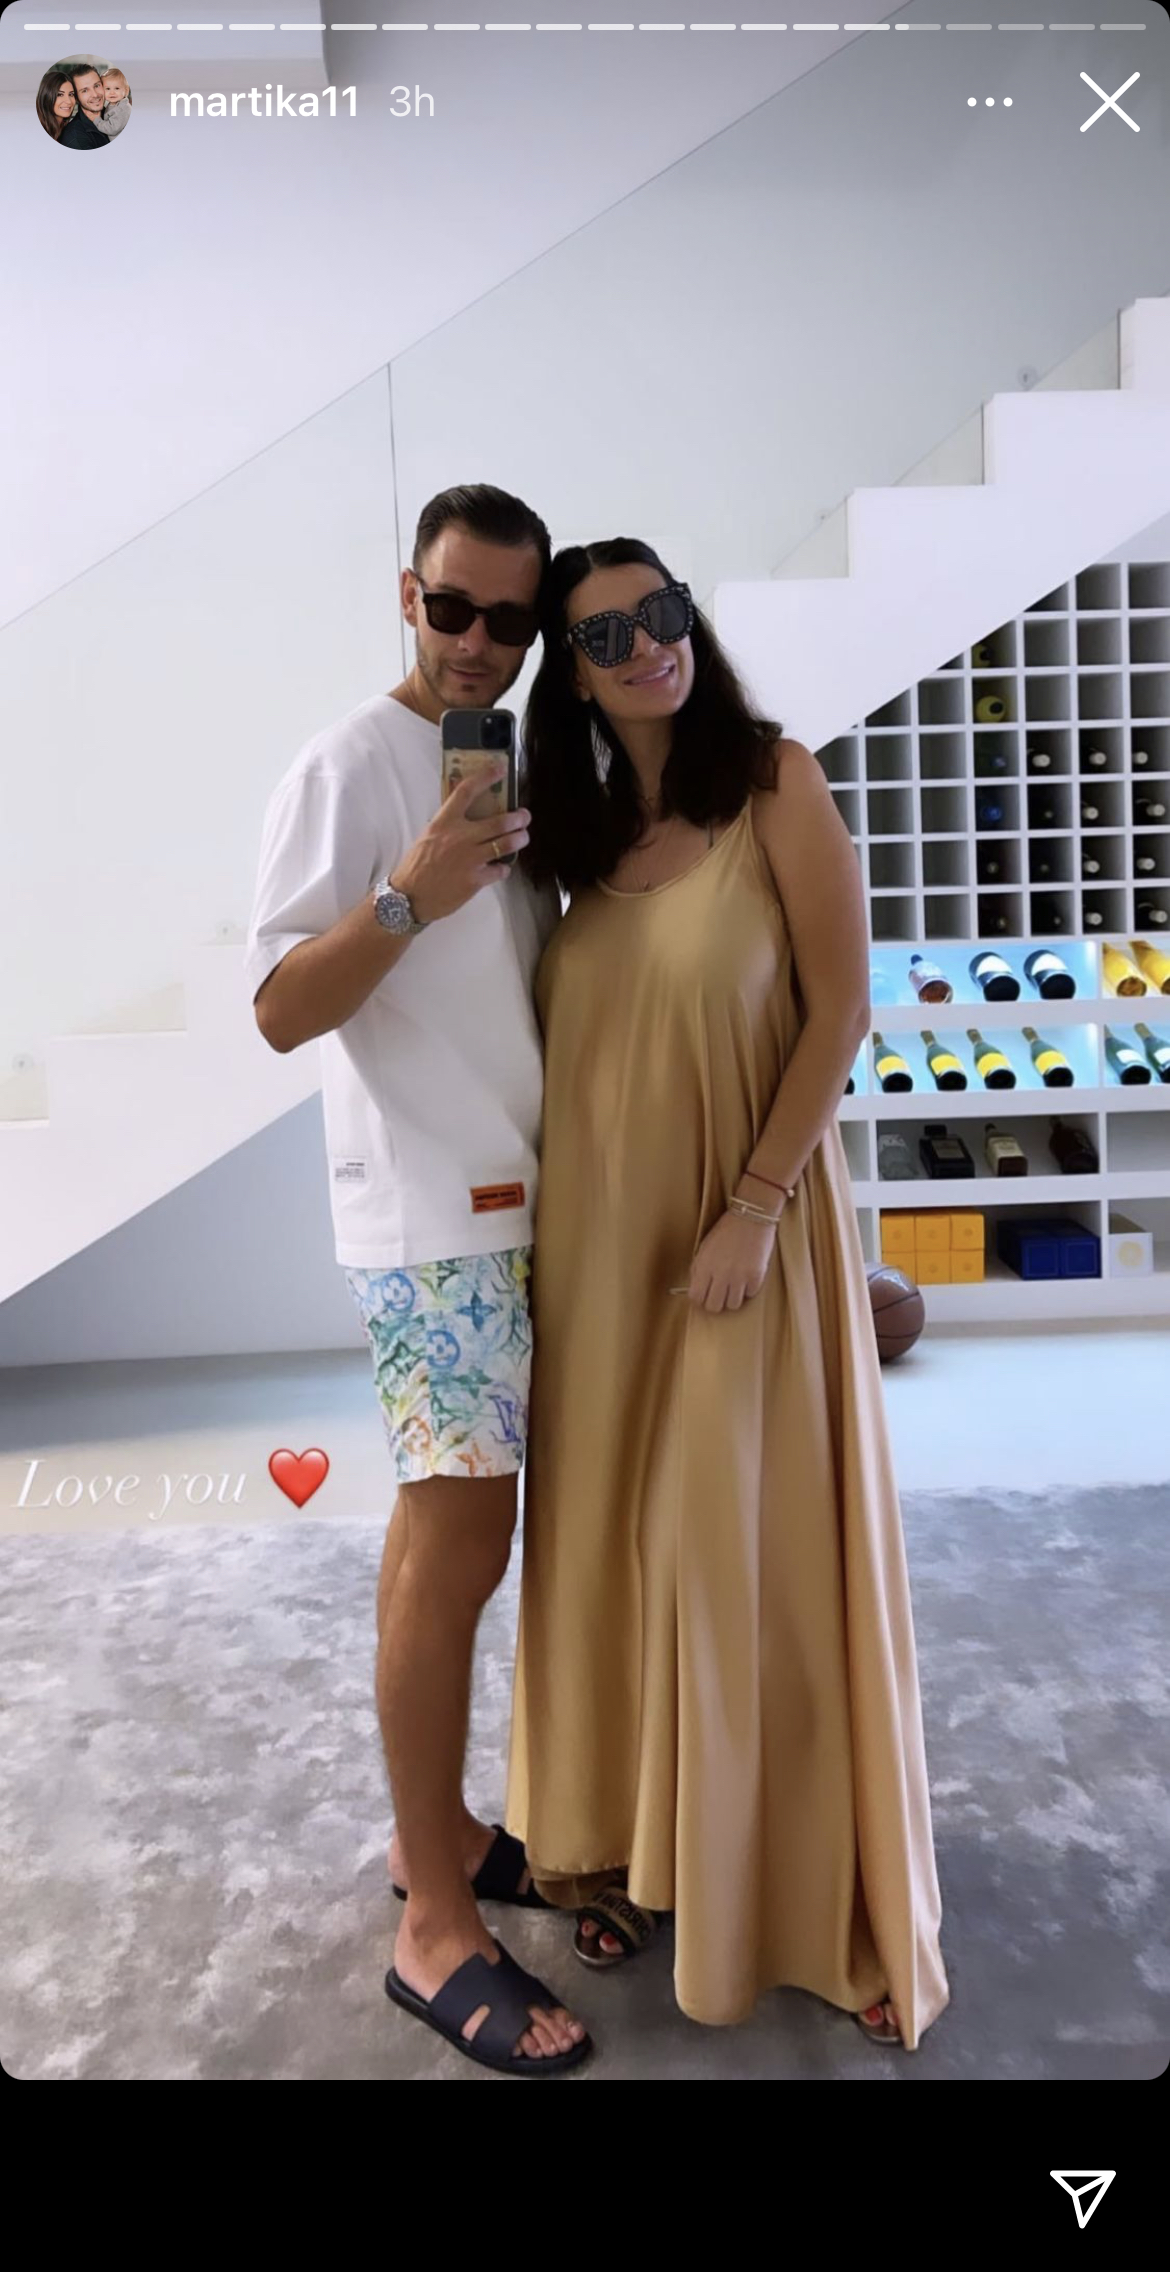  Martika Caringella profite de sa nouvelle grossesse sous le soleil de Dubaï @ Instagram